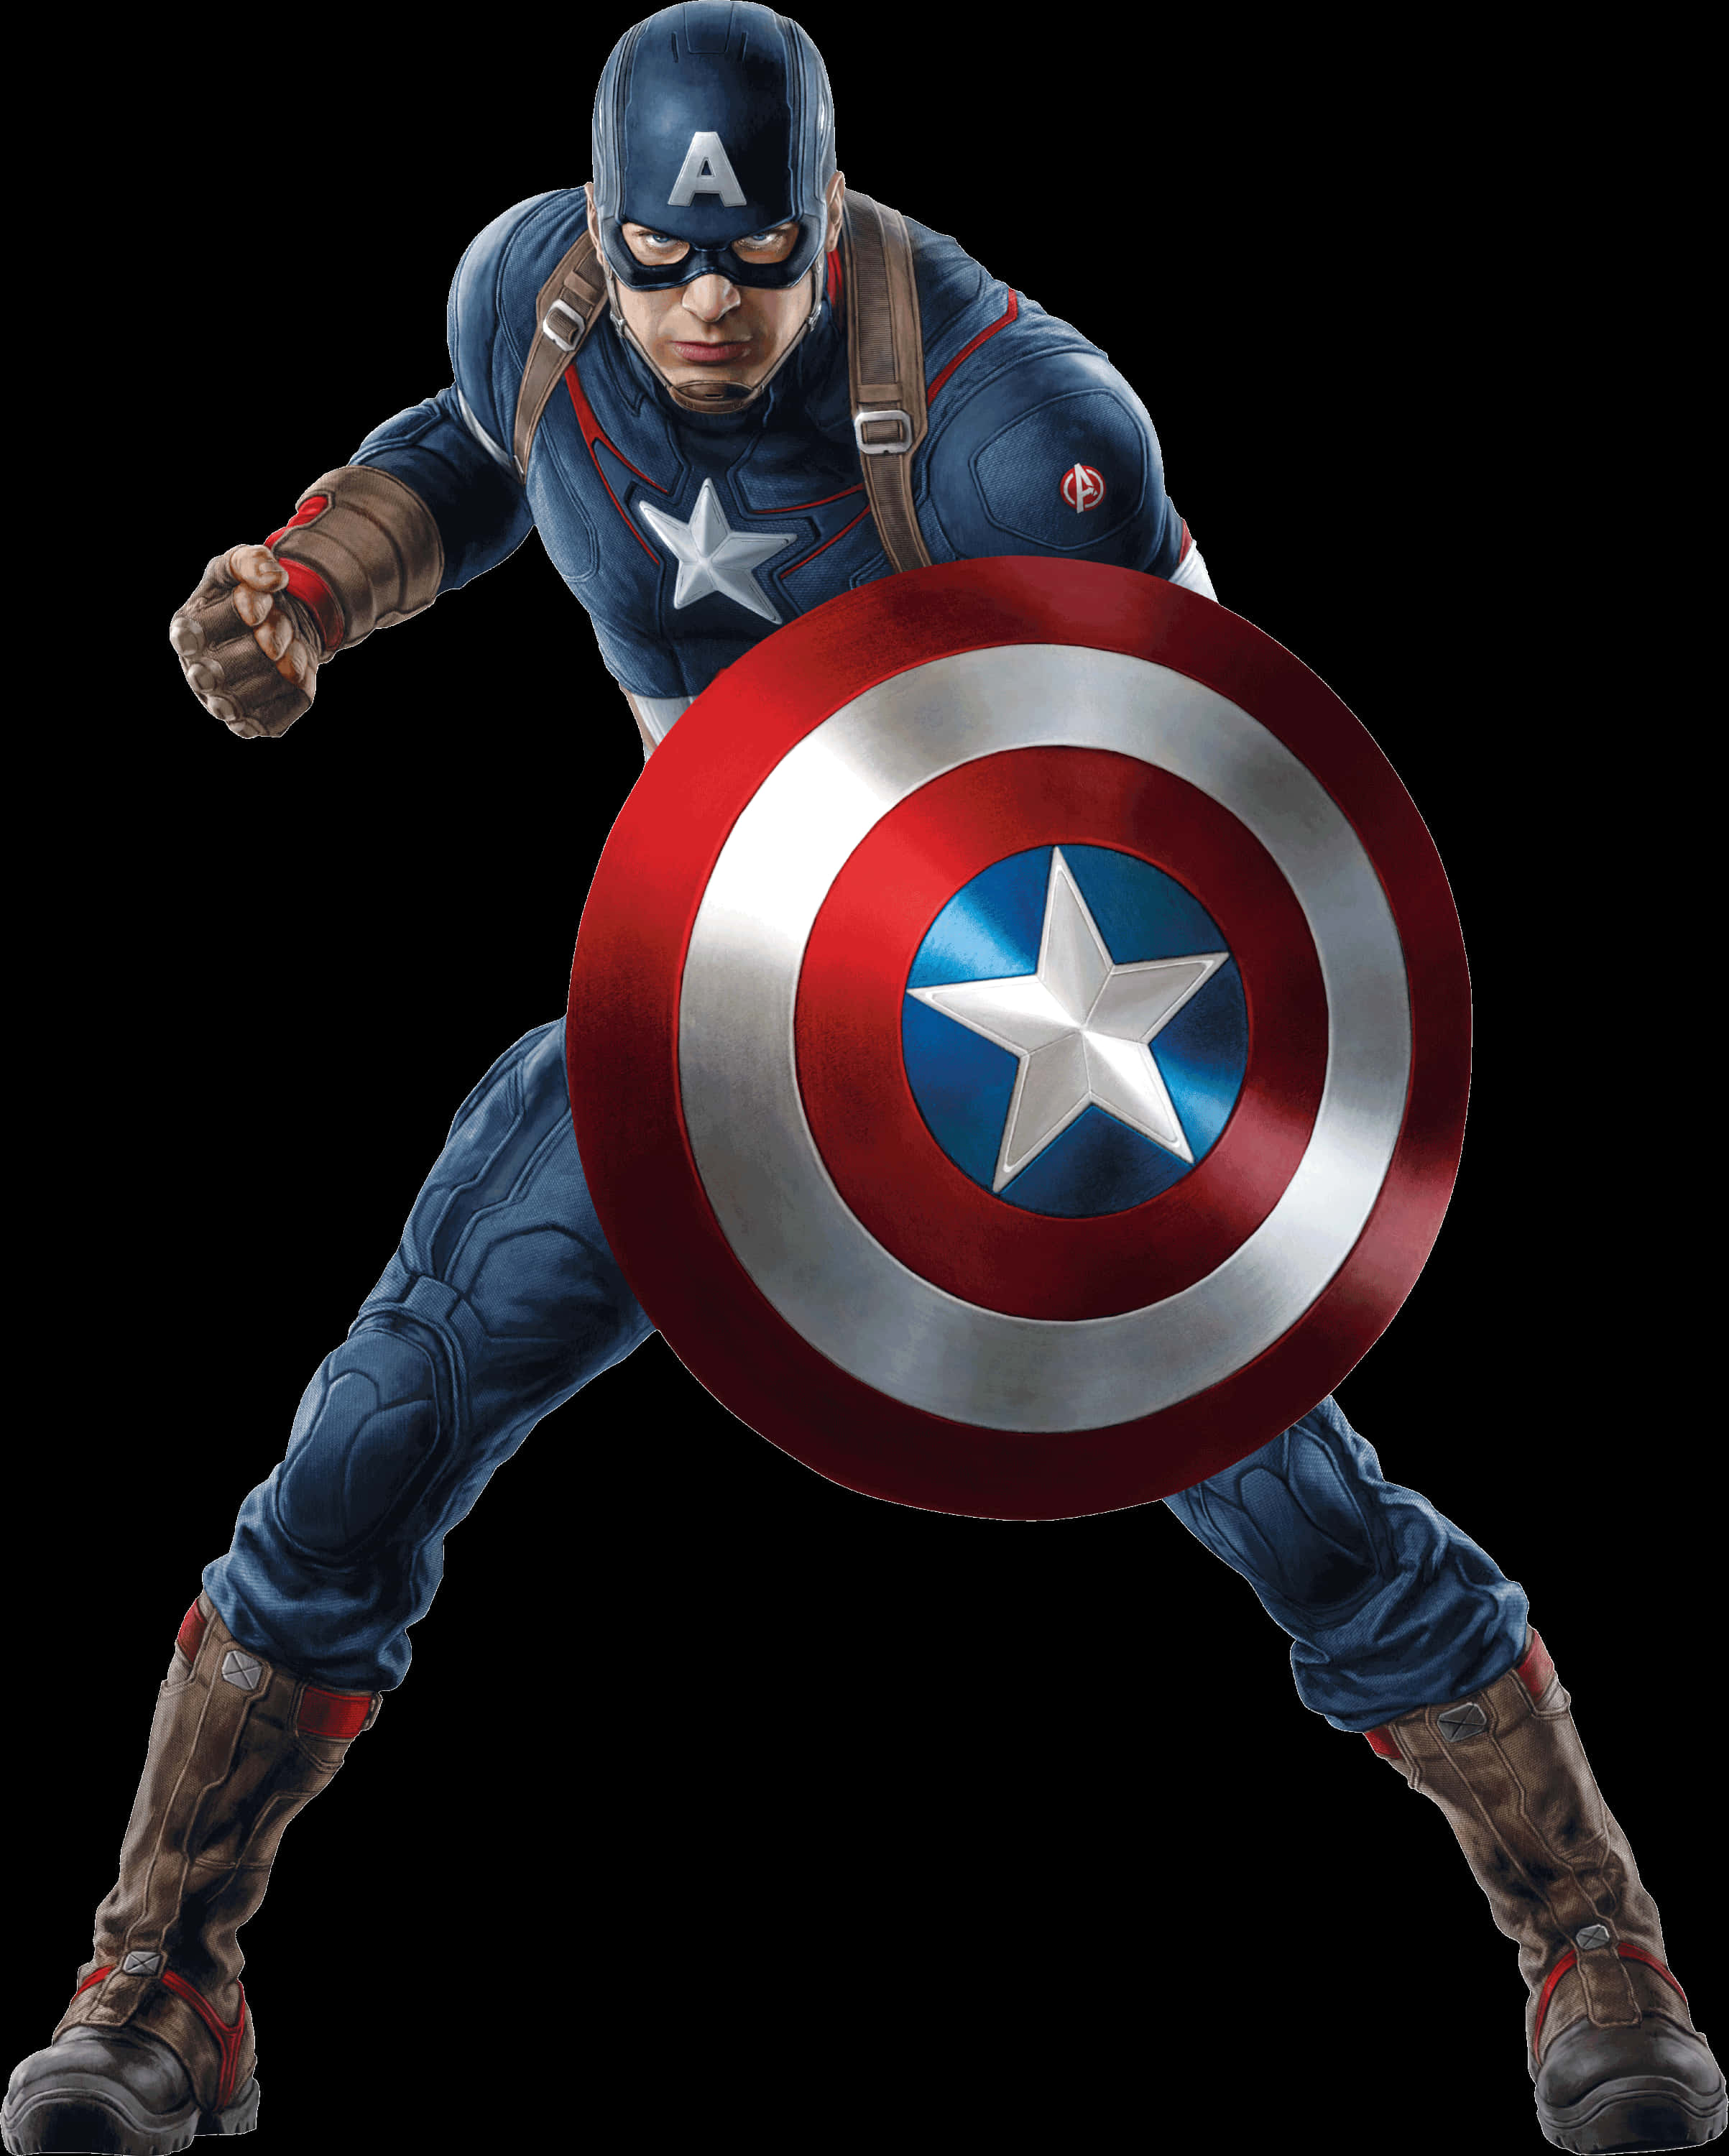 Avengers Captain America Posing